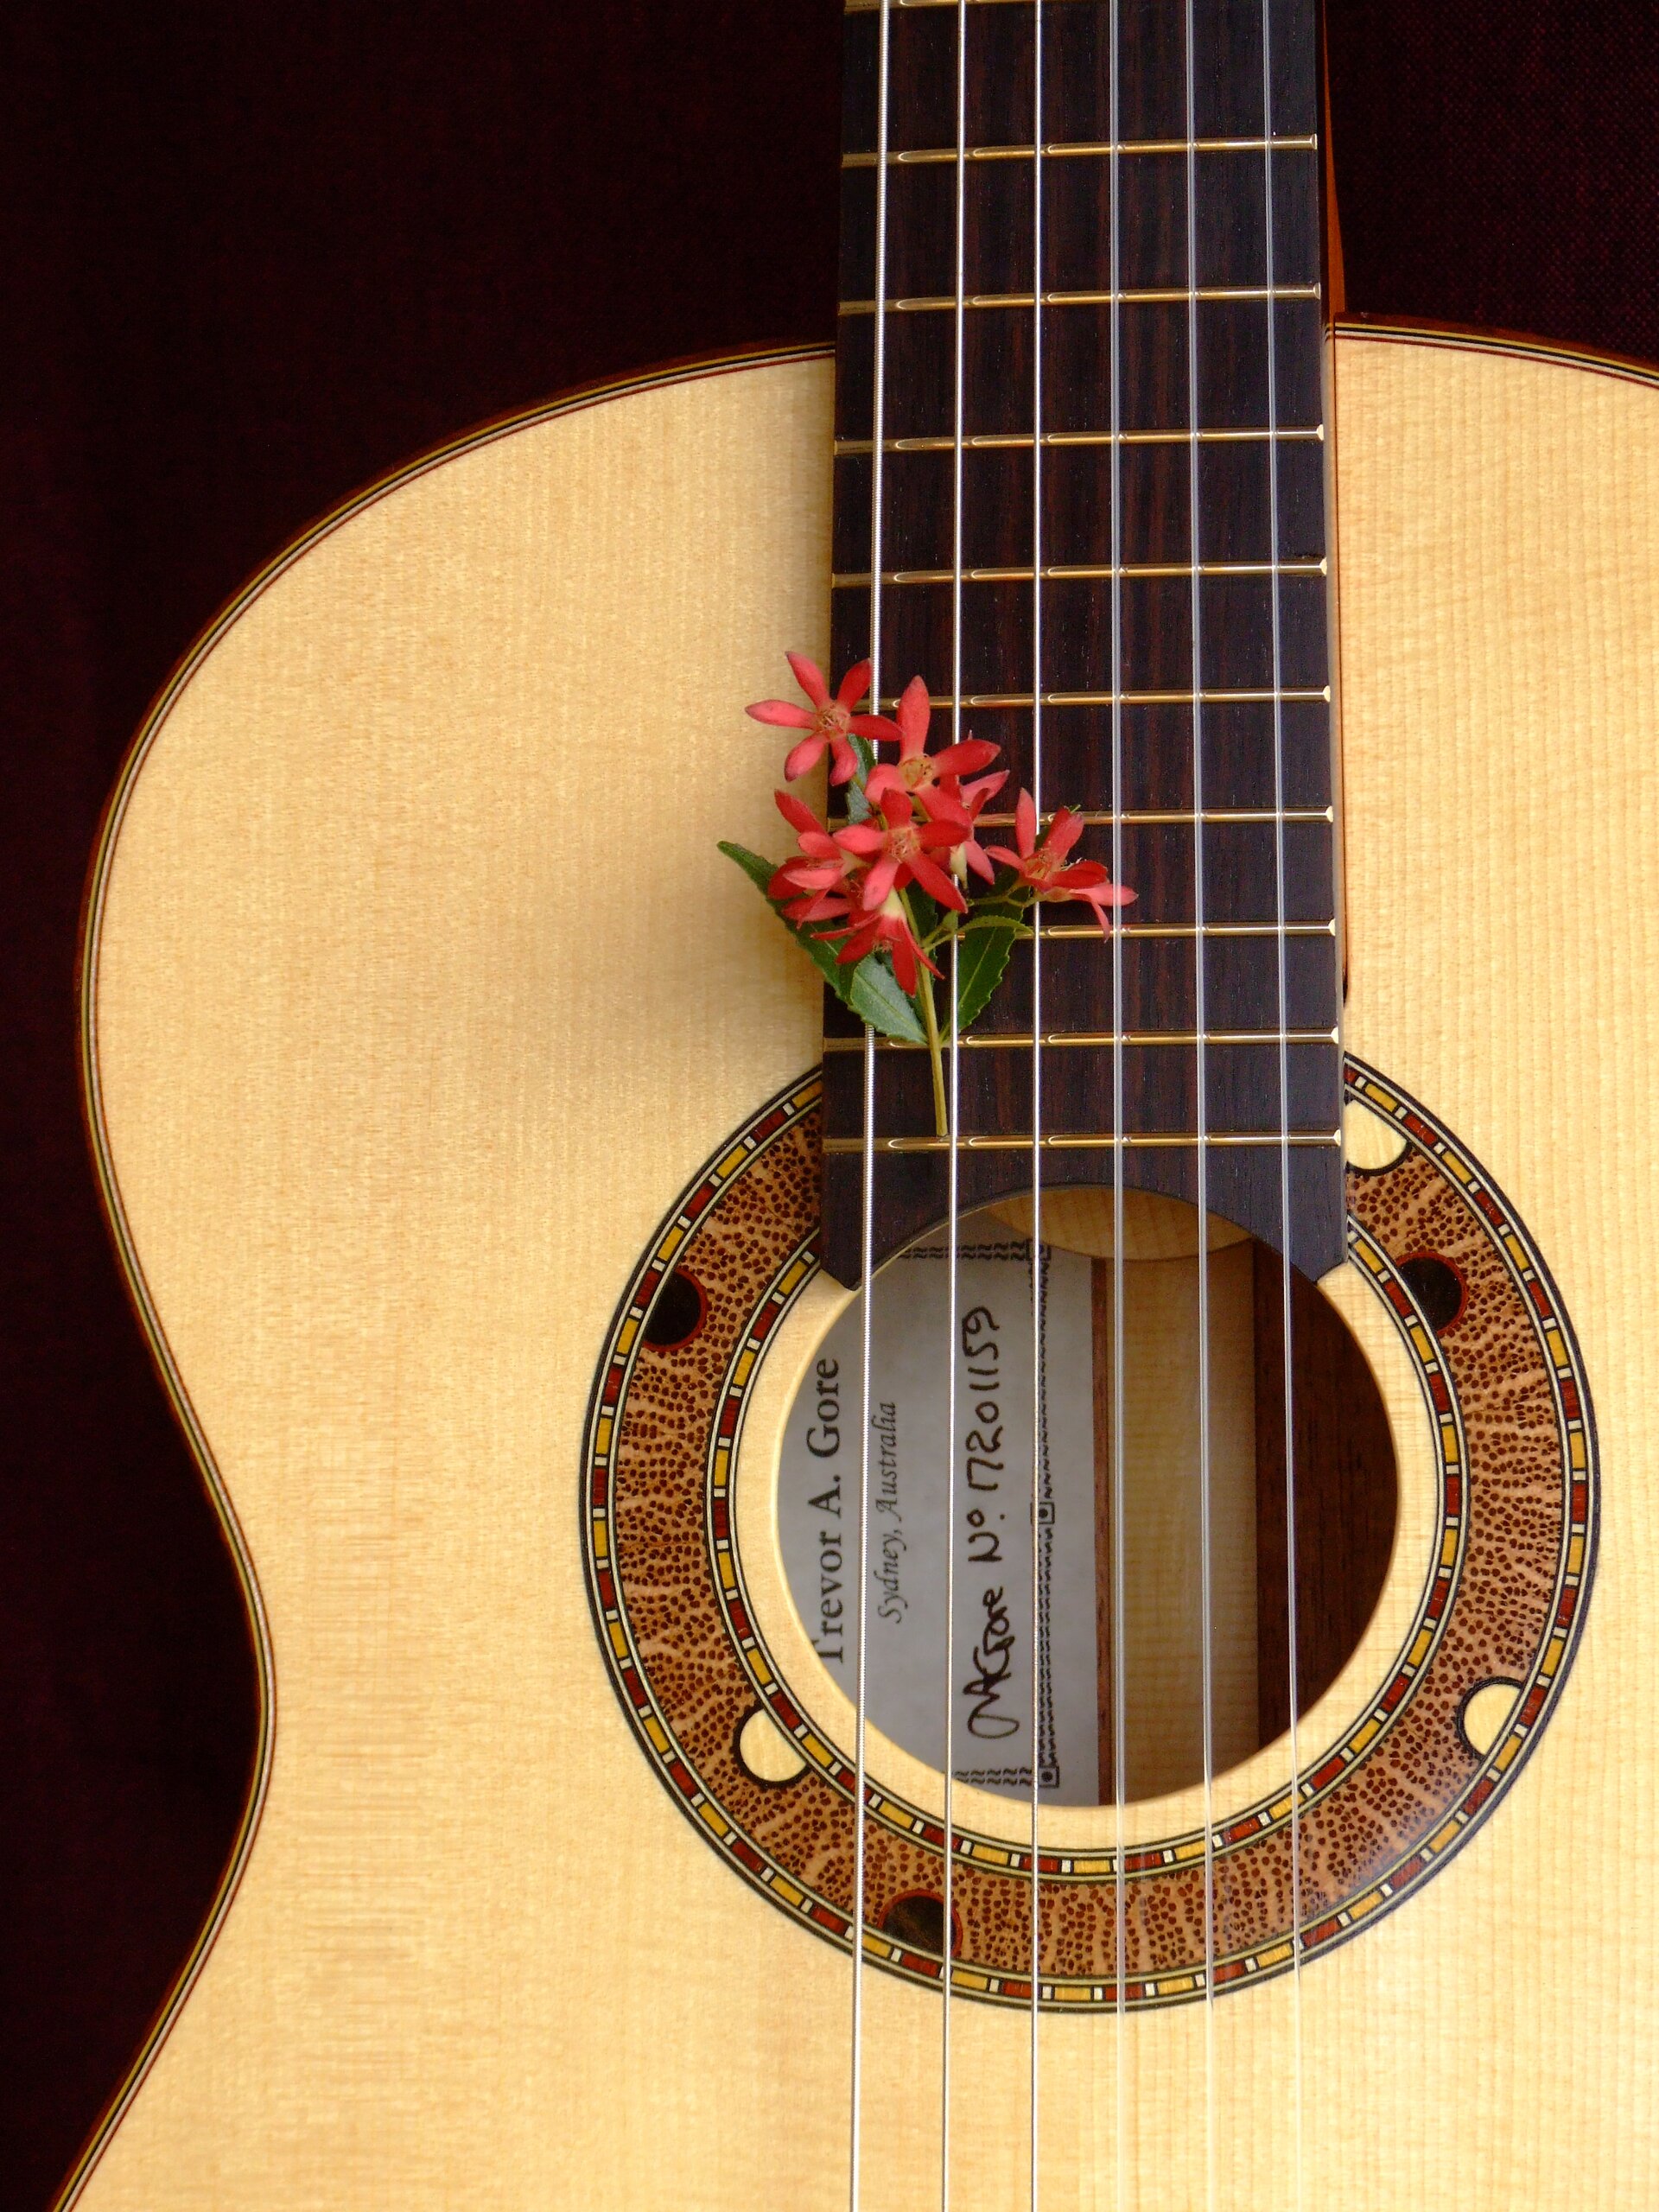 Custom guitars. Australiana rosette in a spuce topped tilt-neck classical guitar with Christmas flower